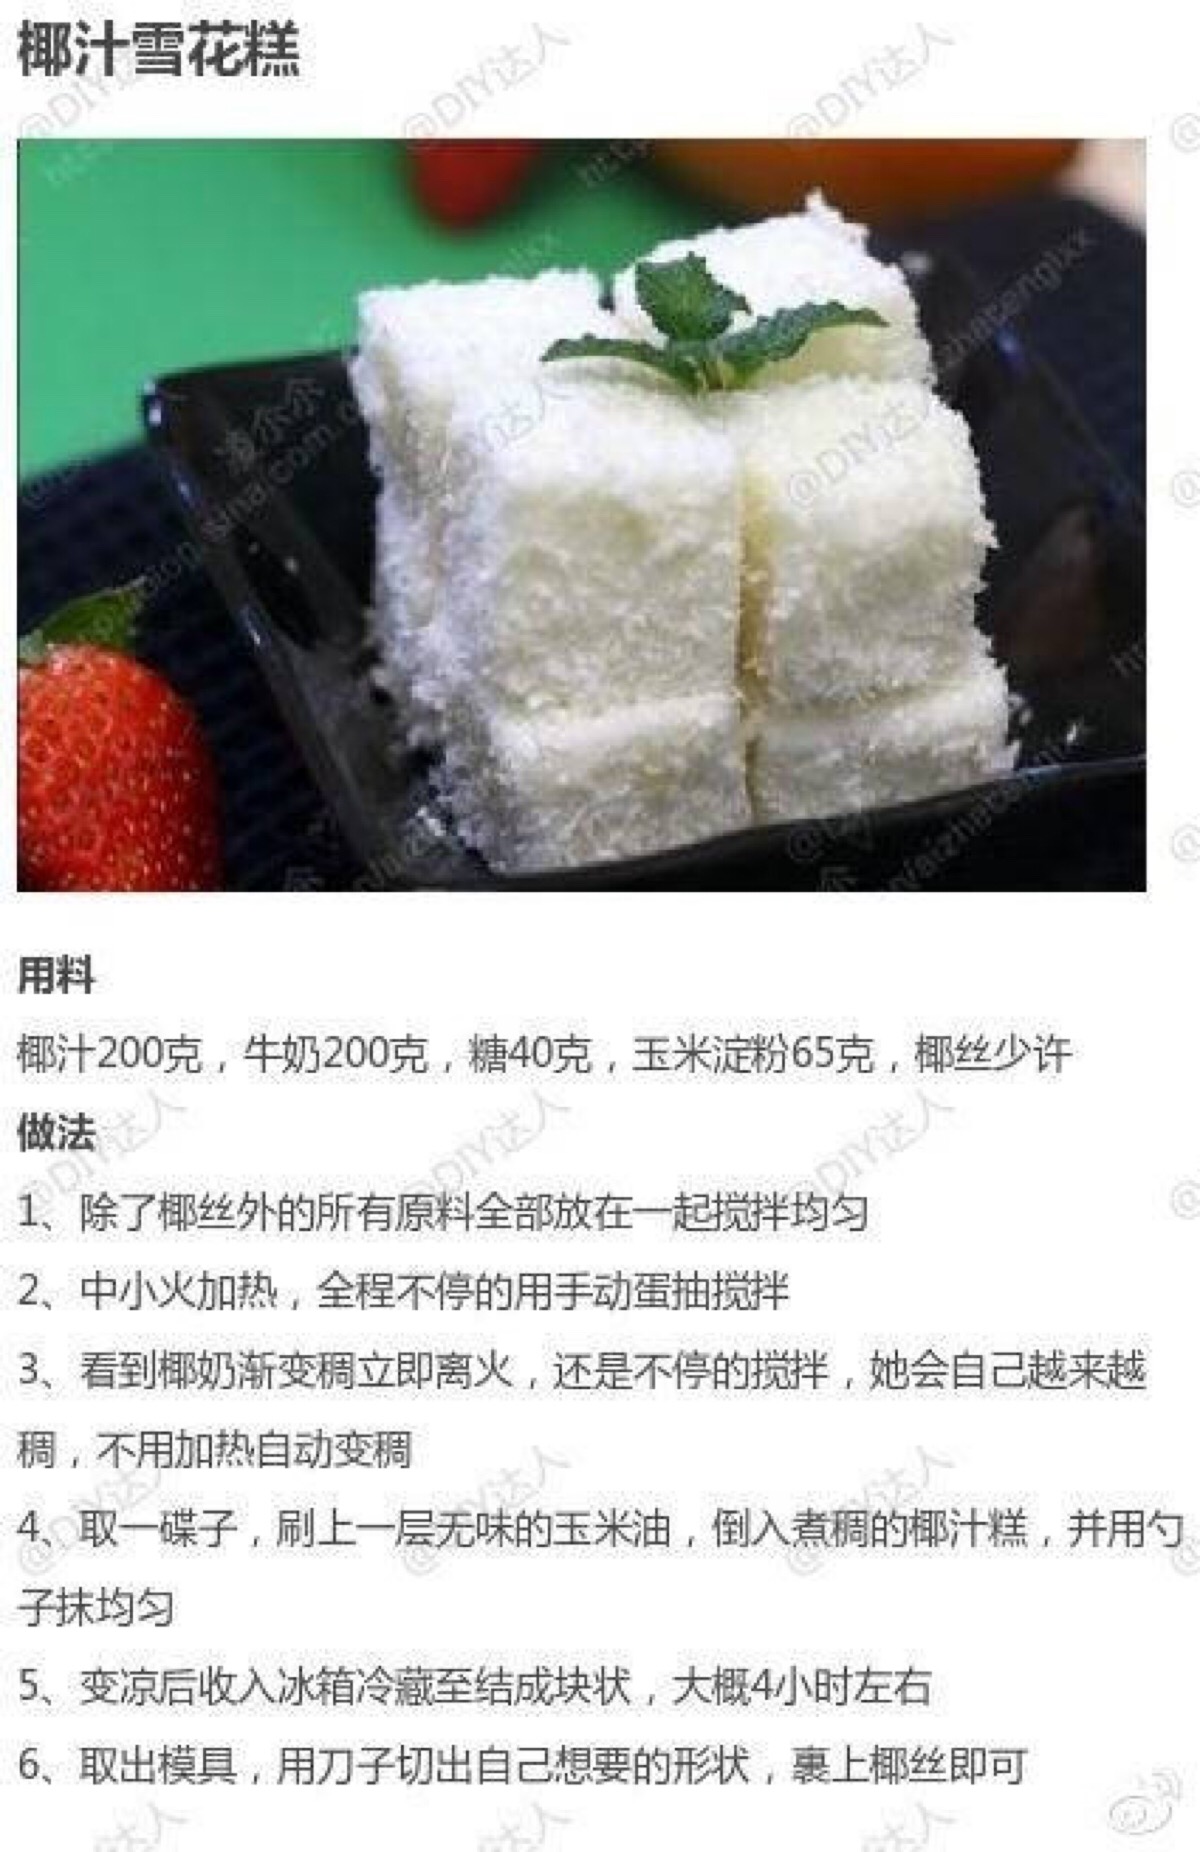 中国地图上的十大传统糕点做法大全——放大镜商城荐！